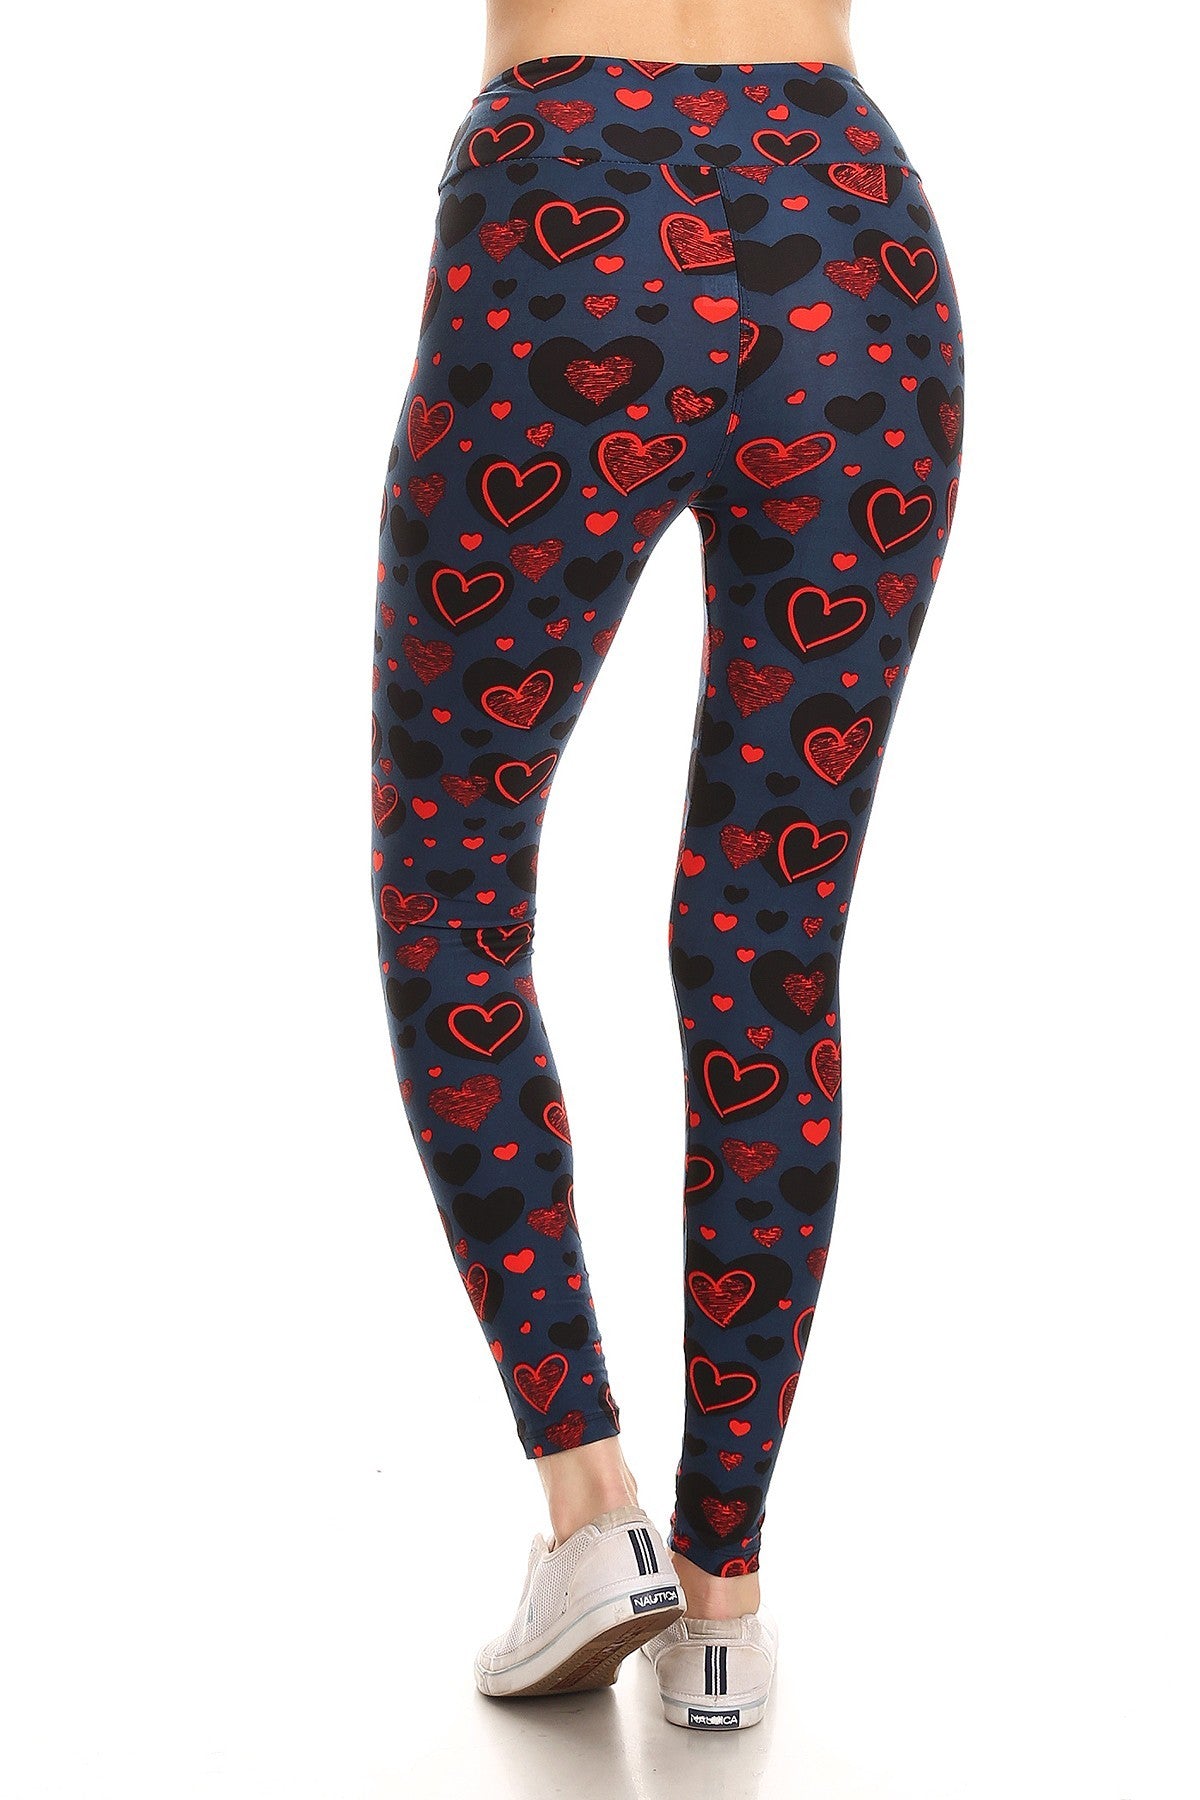 Yoga Style Banded Lined Heart Print, Full Length Leggings